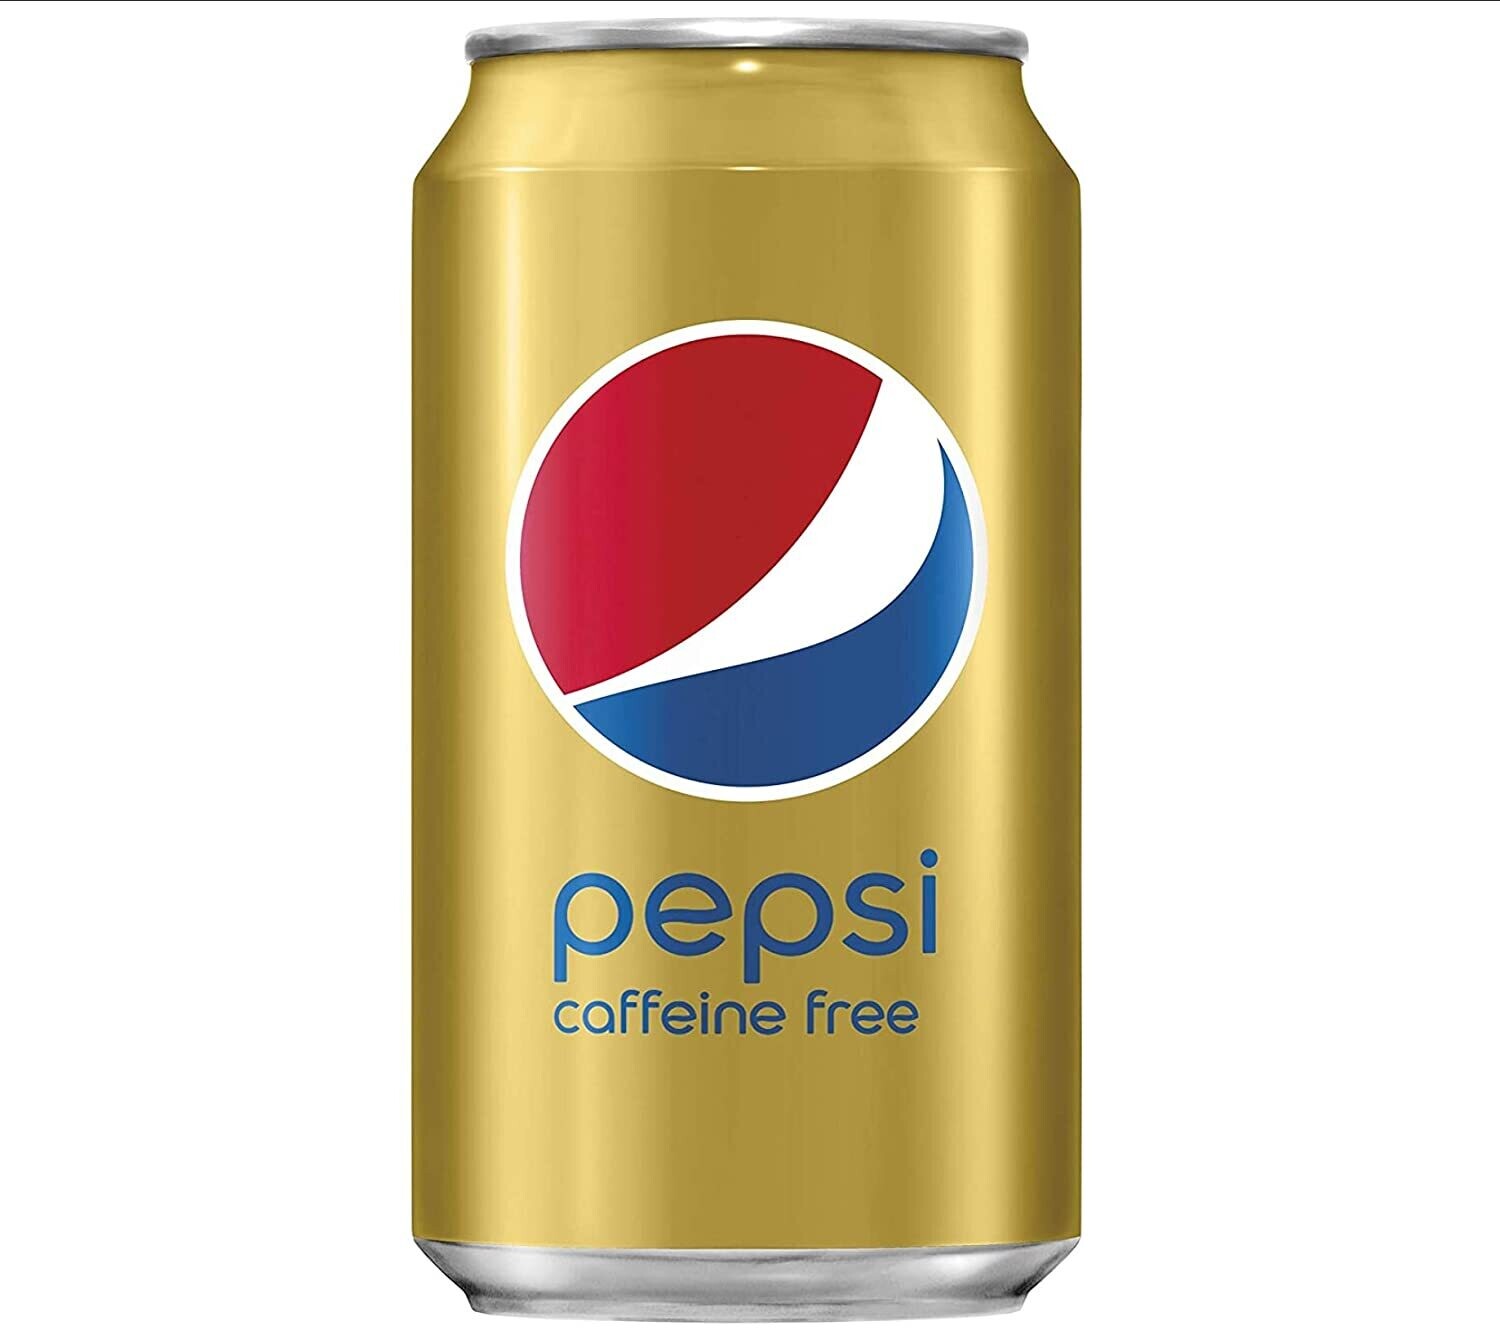 Pepsi-Cola Caffeine Free 12oz Cans